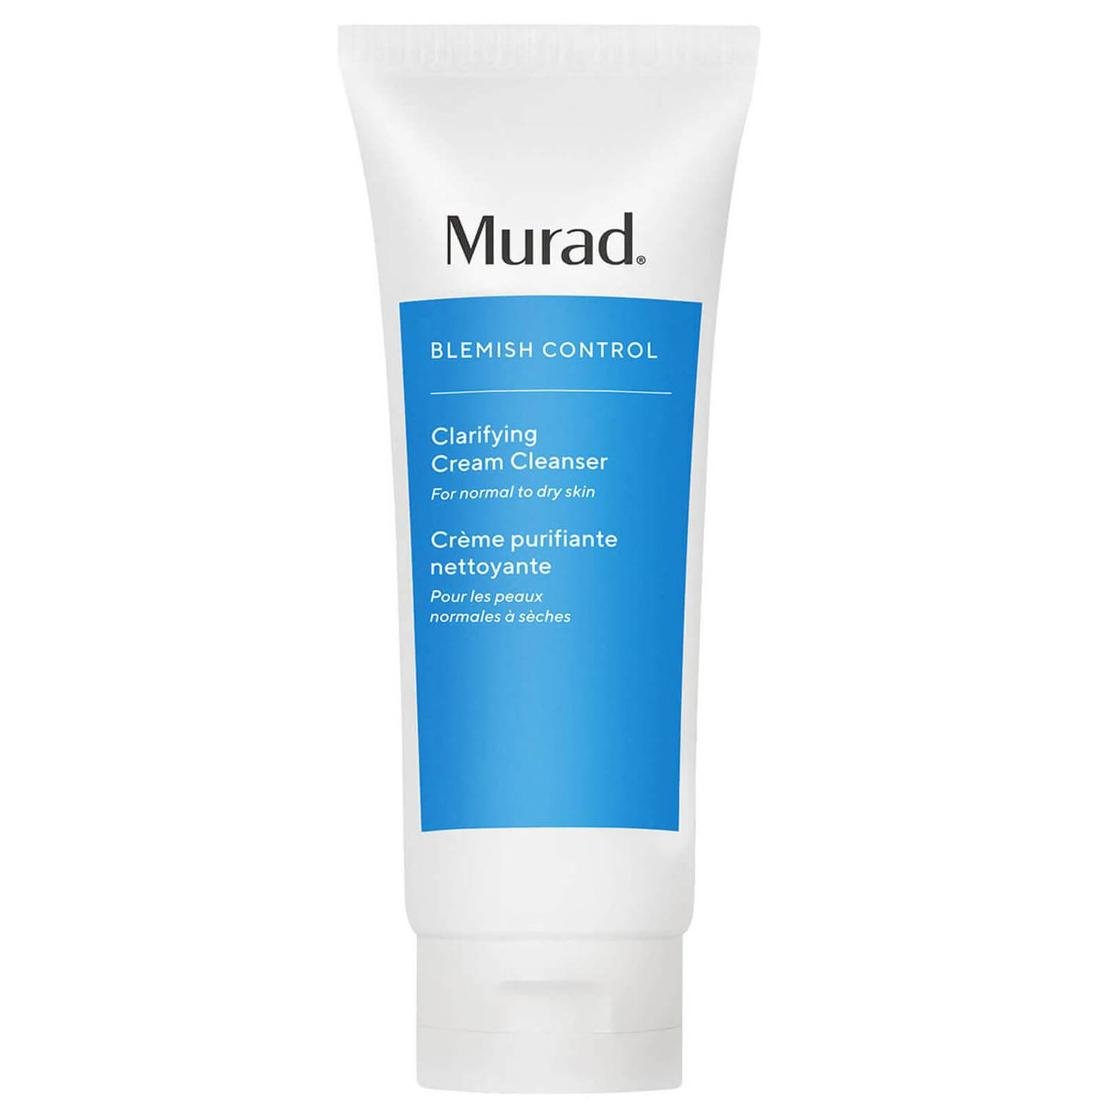 Murad, Blemish Control Clarifying Cream Cleanser, Oczyszczający żel do twarzy do skóry suchej, 200 ml